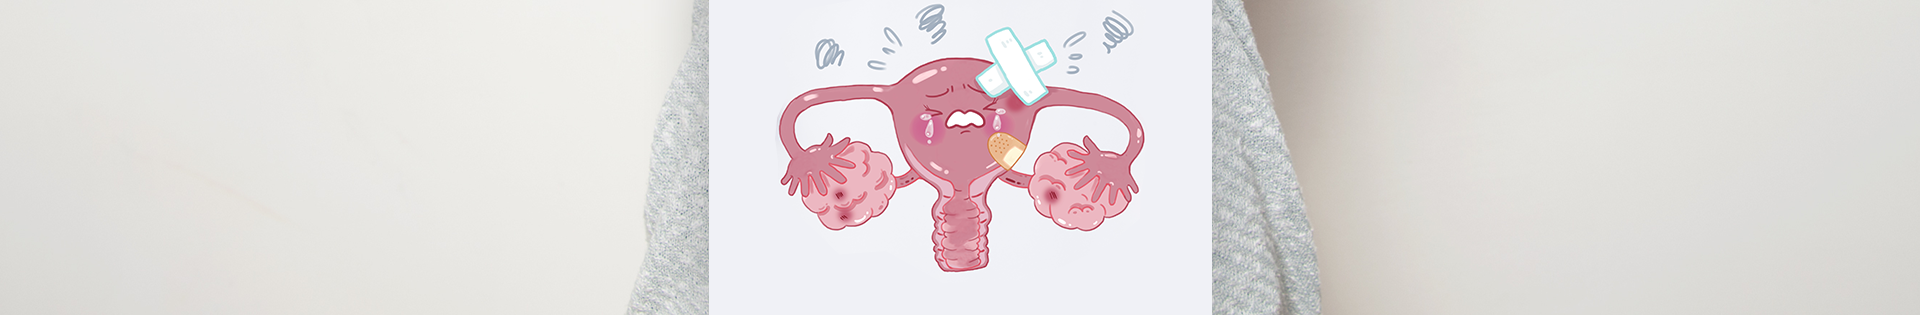 Endometriomas: o que são?